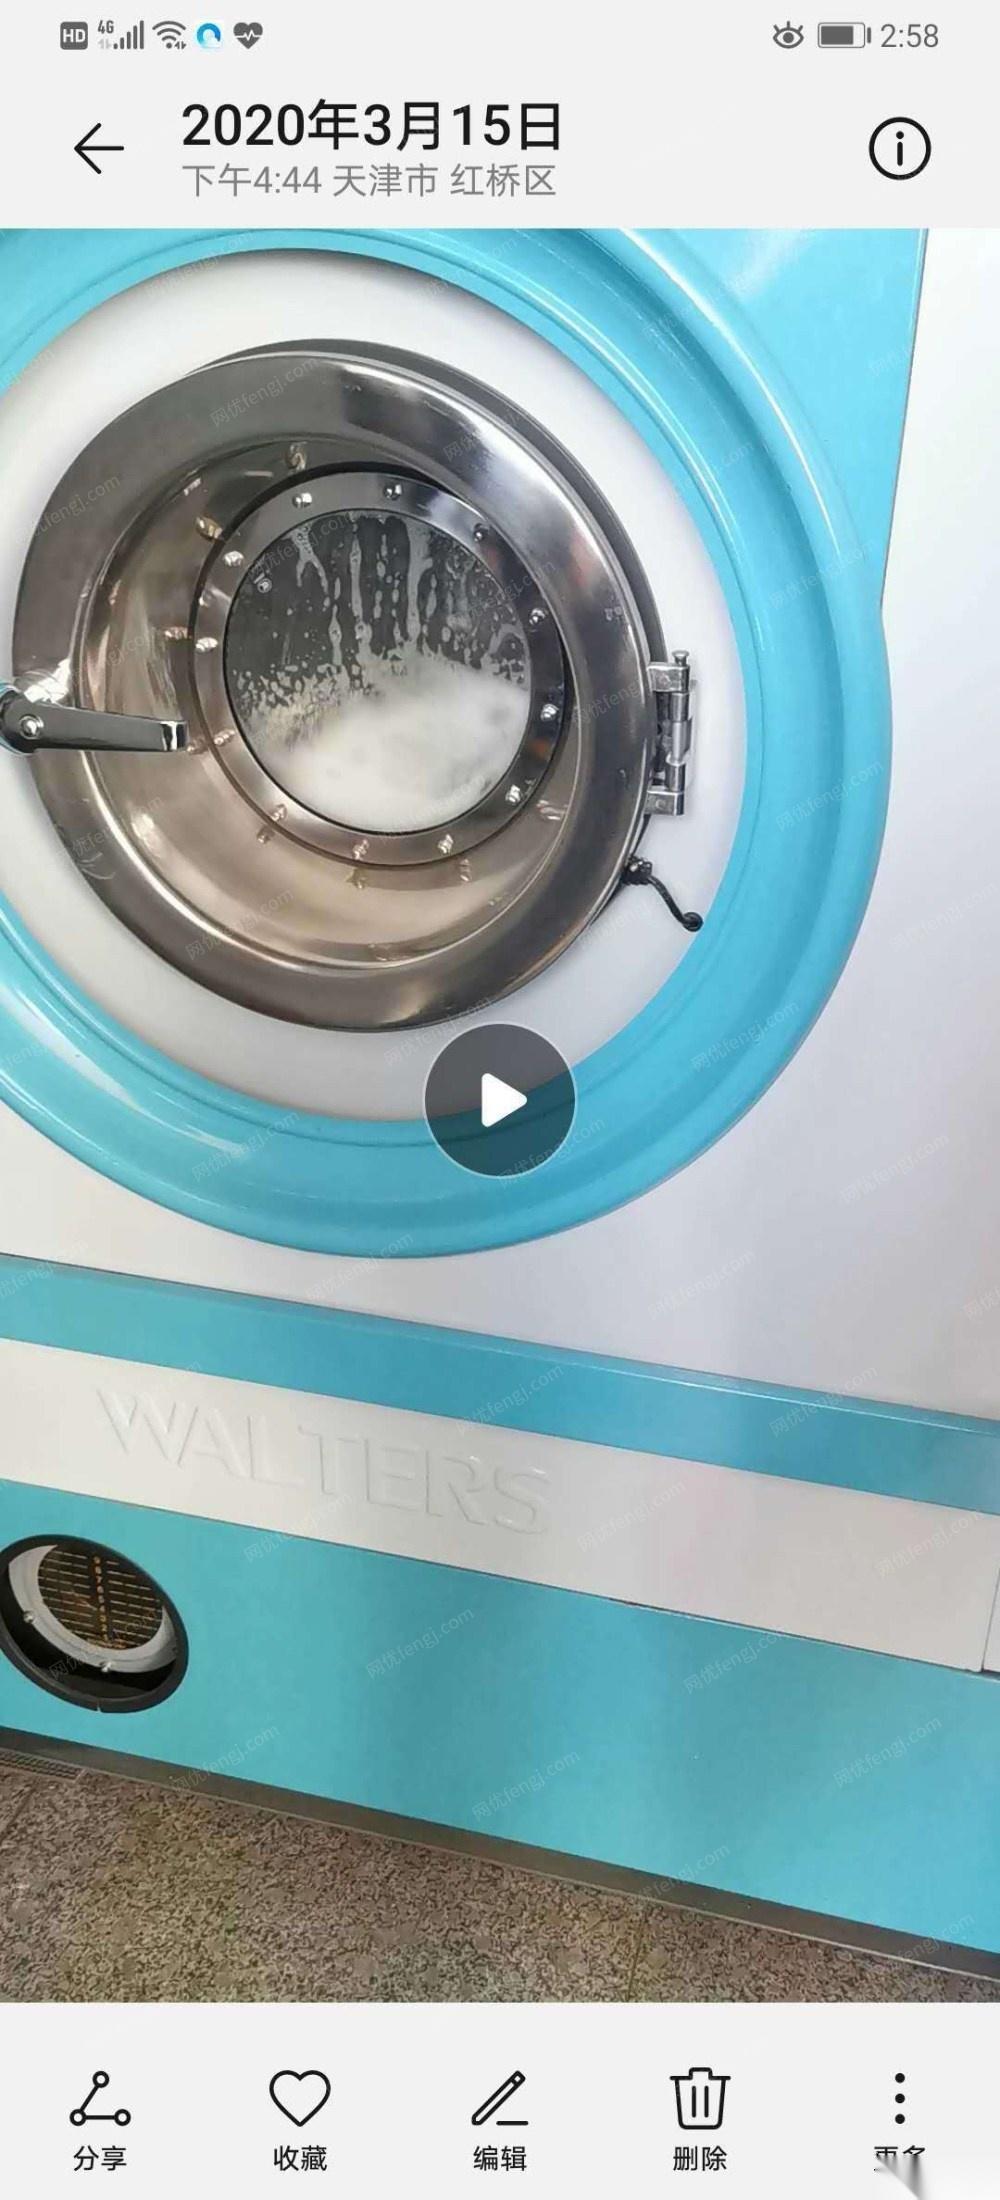 天津津南区整套干洗店设备因租金到期现特价处理 38000元